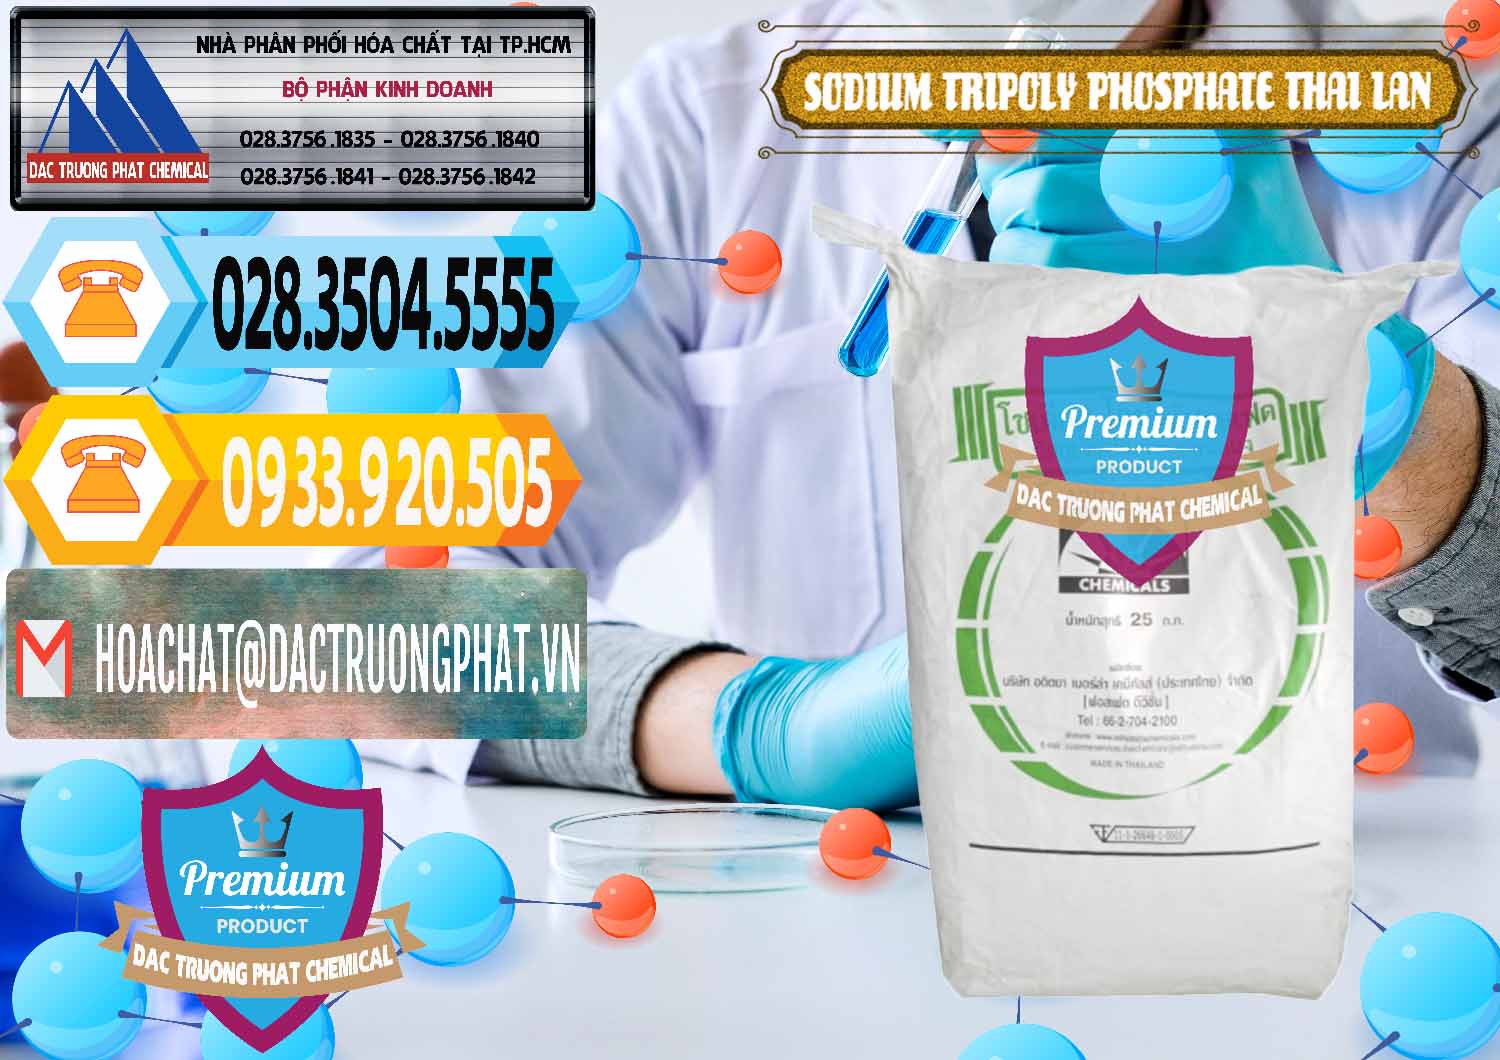 Cty chuyên bán - cung ứng Sodium Tripoly Phosphate - STPP Aditya Birla Grasim Thái Lan Thailand - 0421 - Nơi cung ứng ( phân phối ) hóa chất tại TP.HCM - hoachattayrua.net